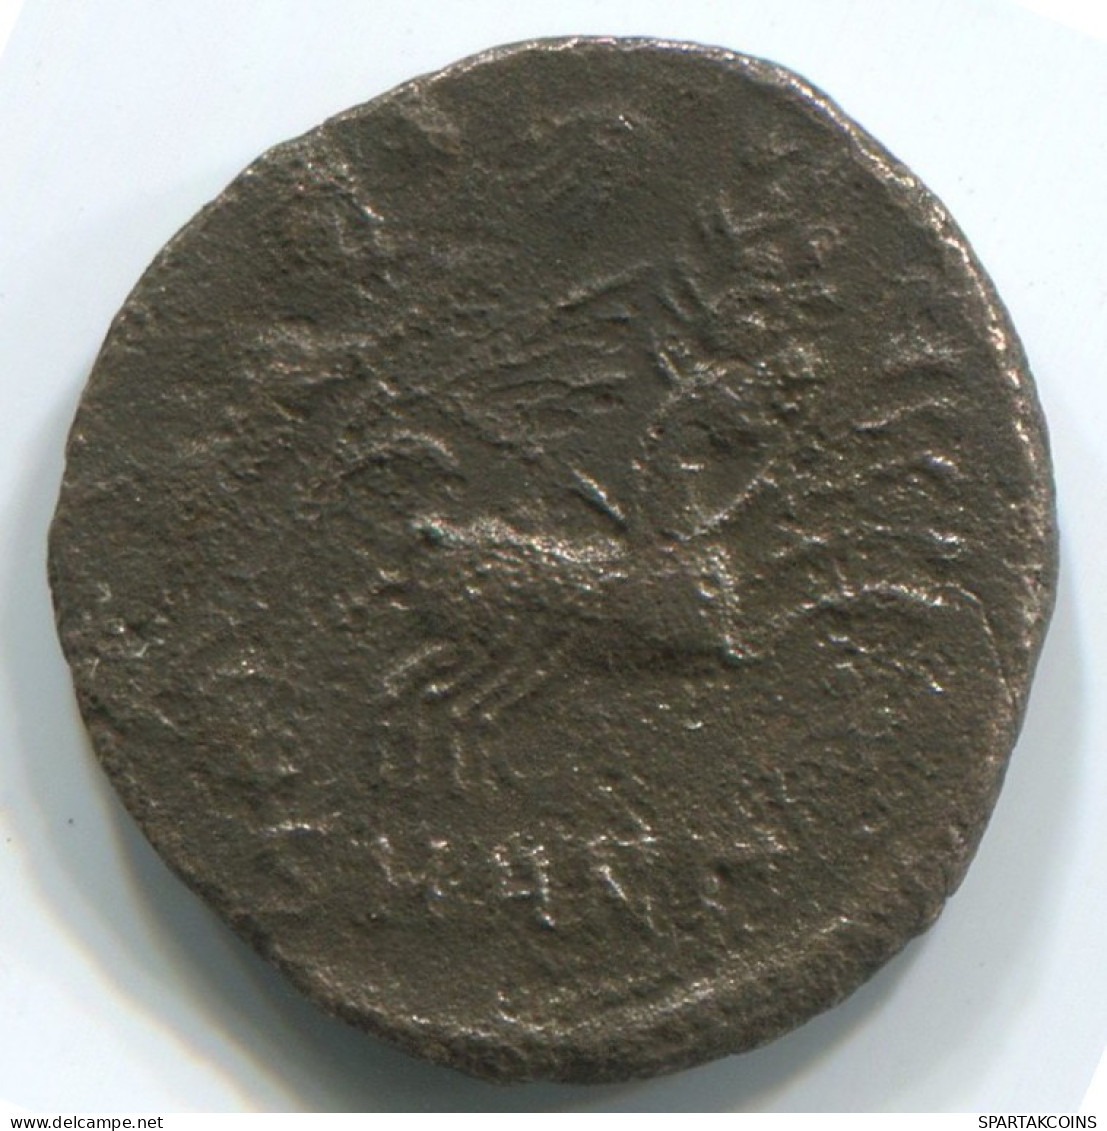 LATE ROMAN EMPIRE Coin Ancient Authentic Roman Coin 1.6g/15mm #ANT2263.14.U.A - La Fin De L'Empire (363-476)